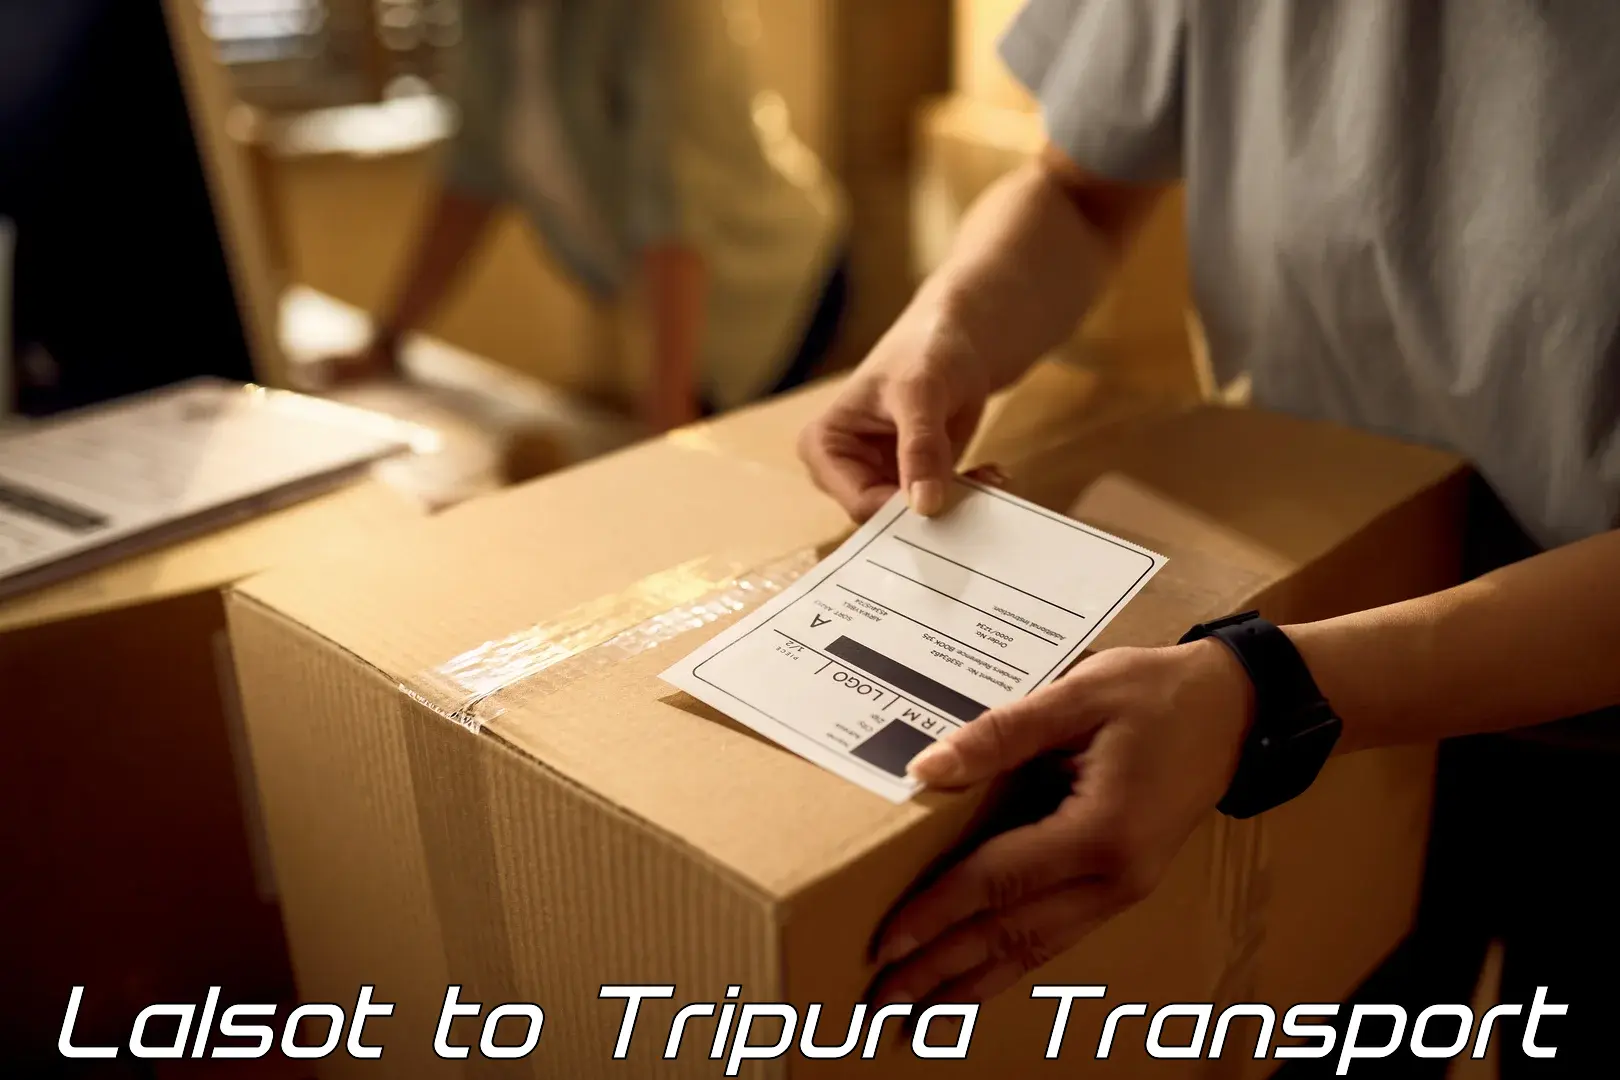 Online transport Lalsot to Udaipur Tripura